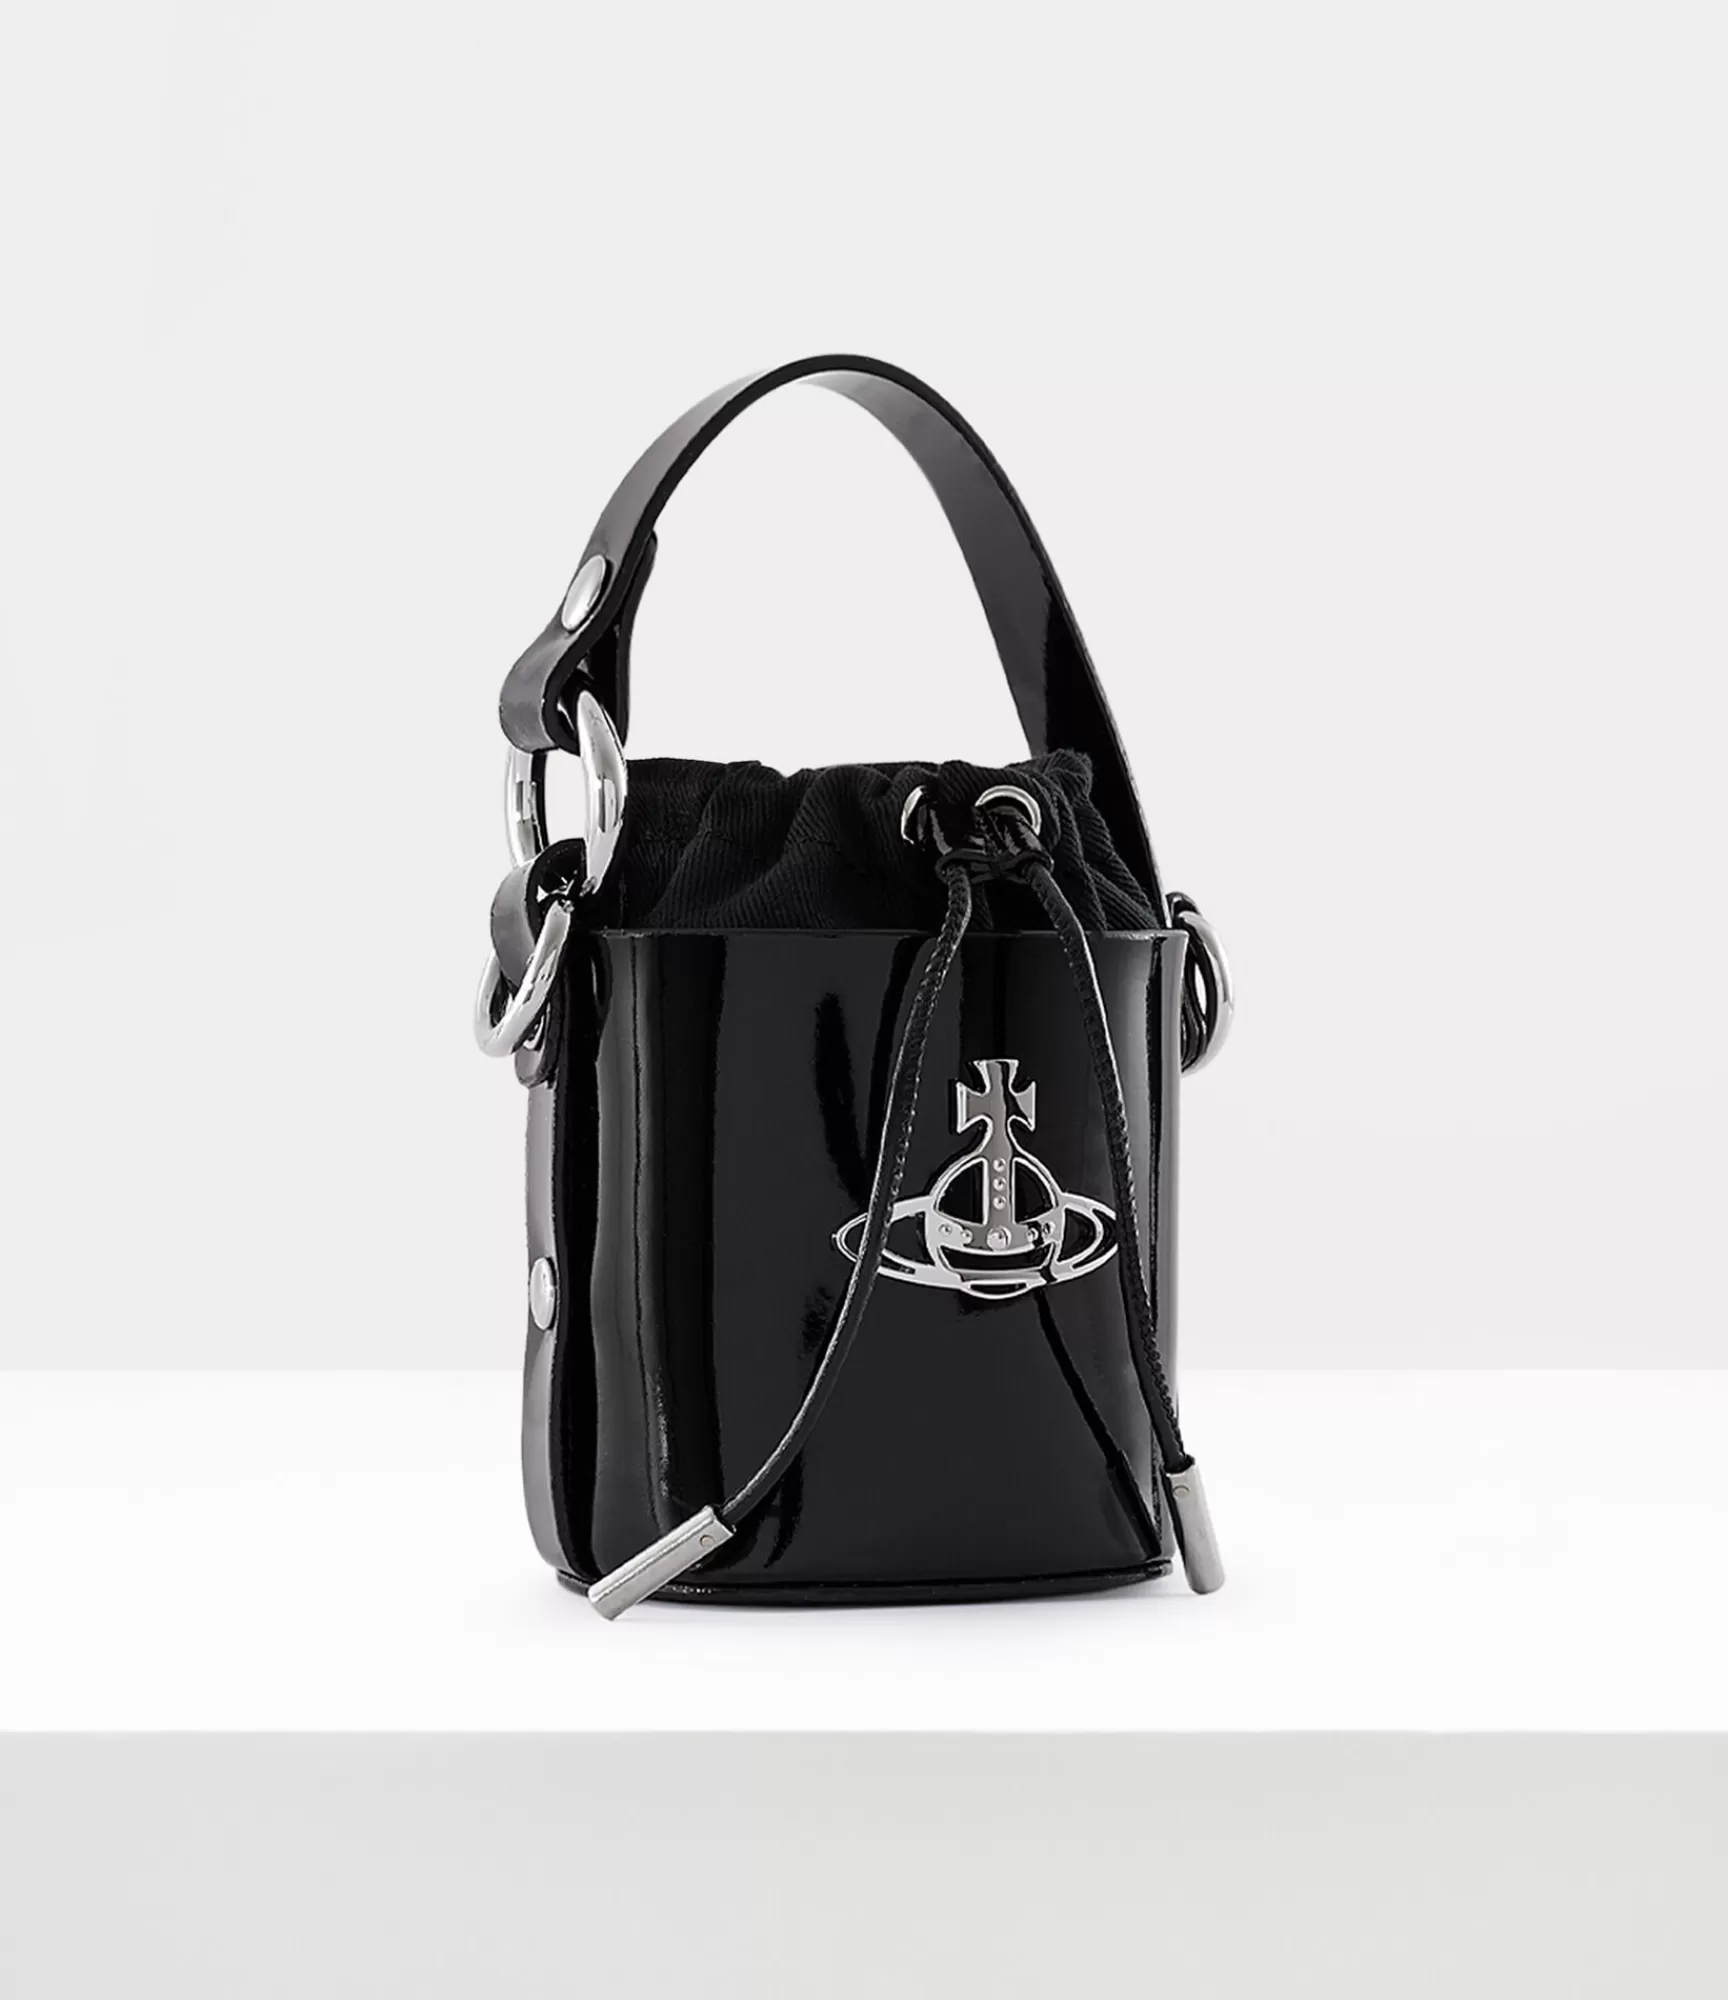 Vivienne Westwood Handbags*Bucket bag Black